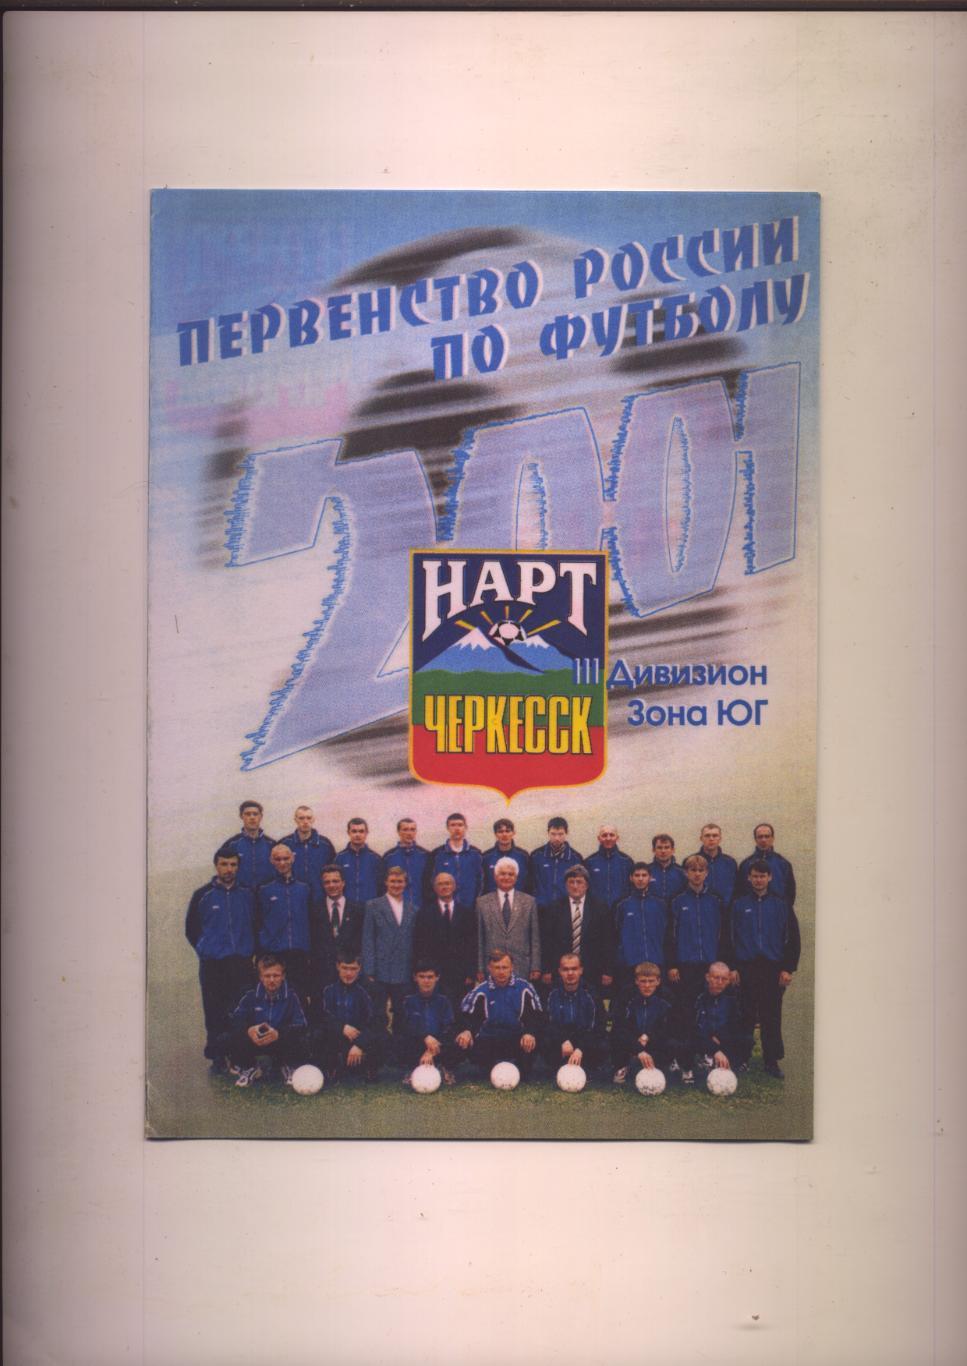 ФотоБуклет Первенство РФ по футболу Нарт Черкесск III дивизион Зона ЮГ 2001